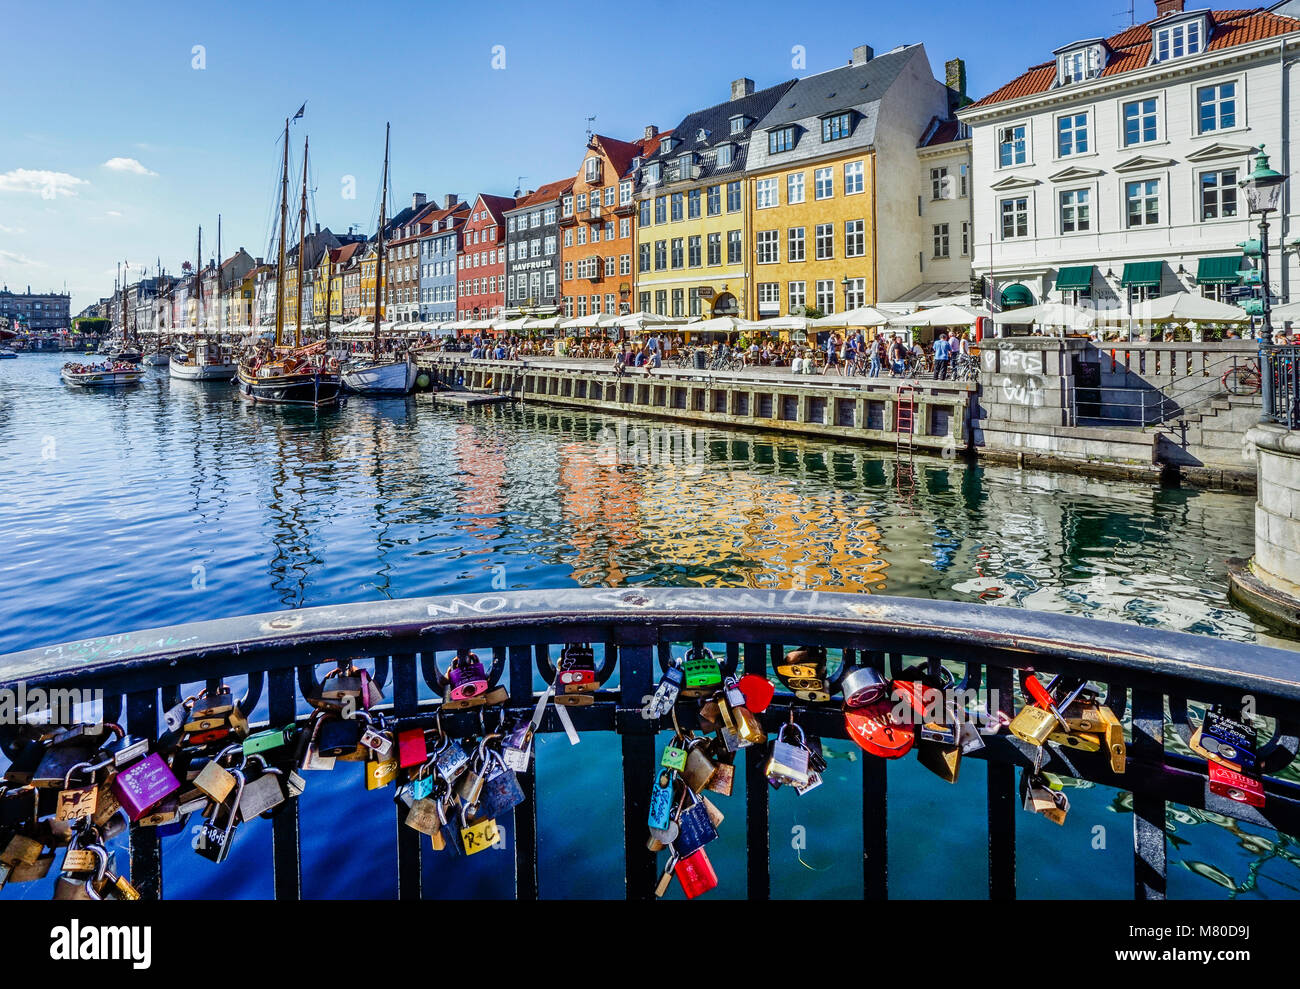 Dänemark, Seeland, Kopenhagen, liebe Sperren auf Nyhavn Brücke mit Blick auf den Kanal Hafen Wasserfront von Nyhavn, mit bunten Stadthäuser, Res Stockfoto